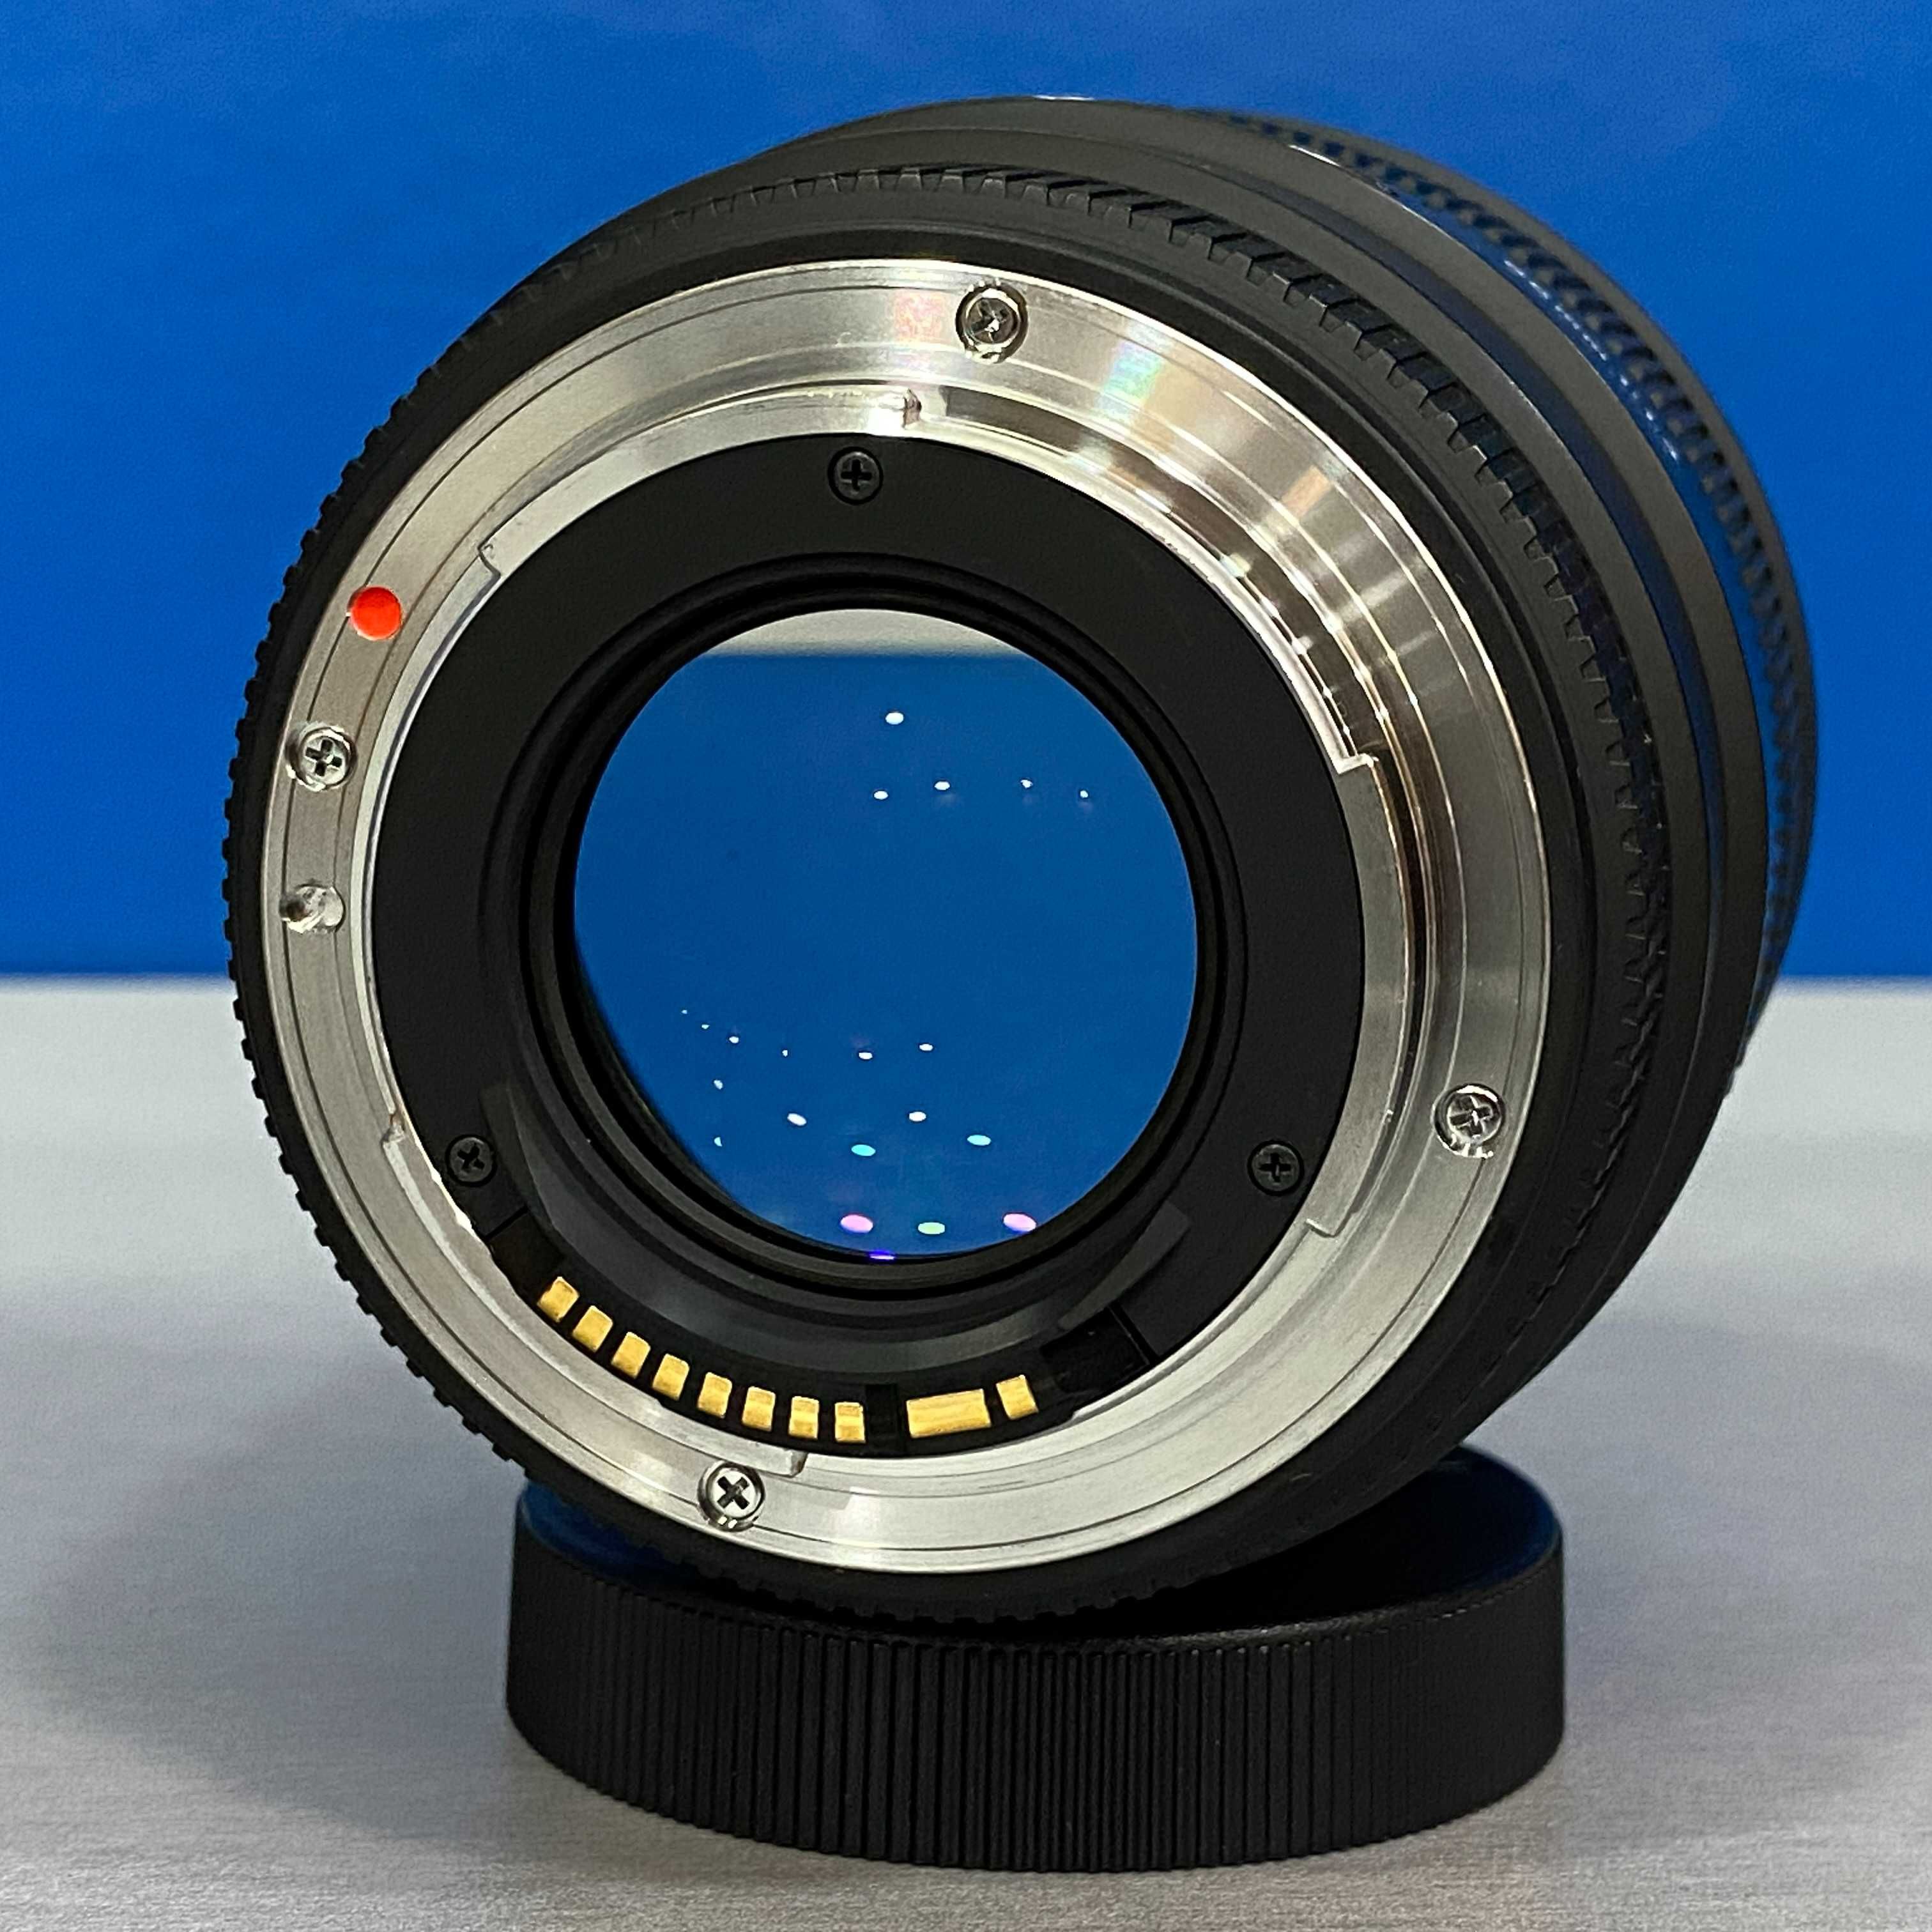 Sigma 85mm f/1.4 EX DG HSM (Canon)